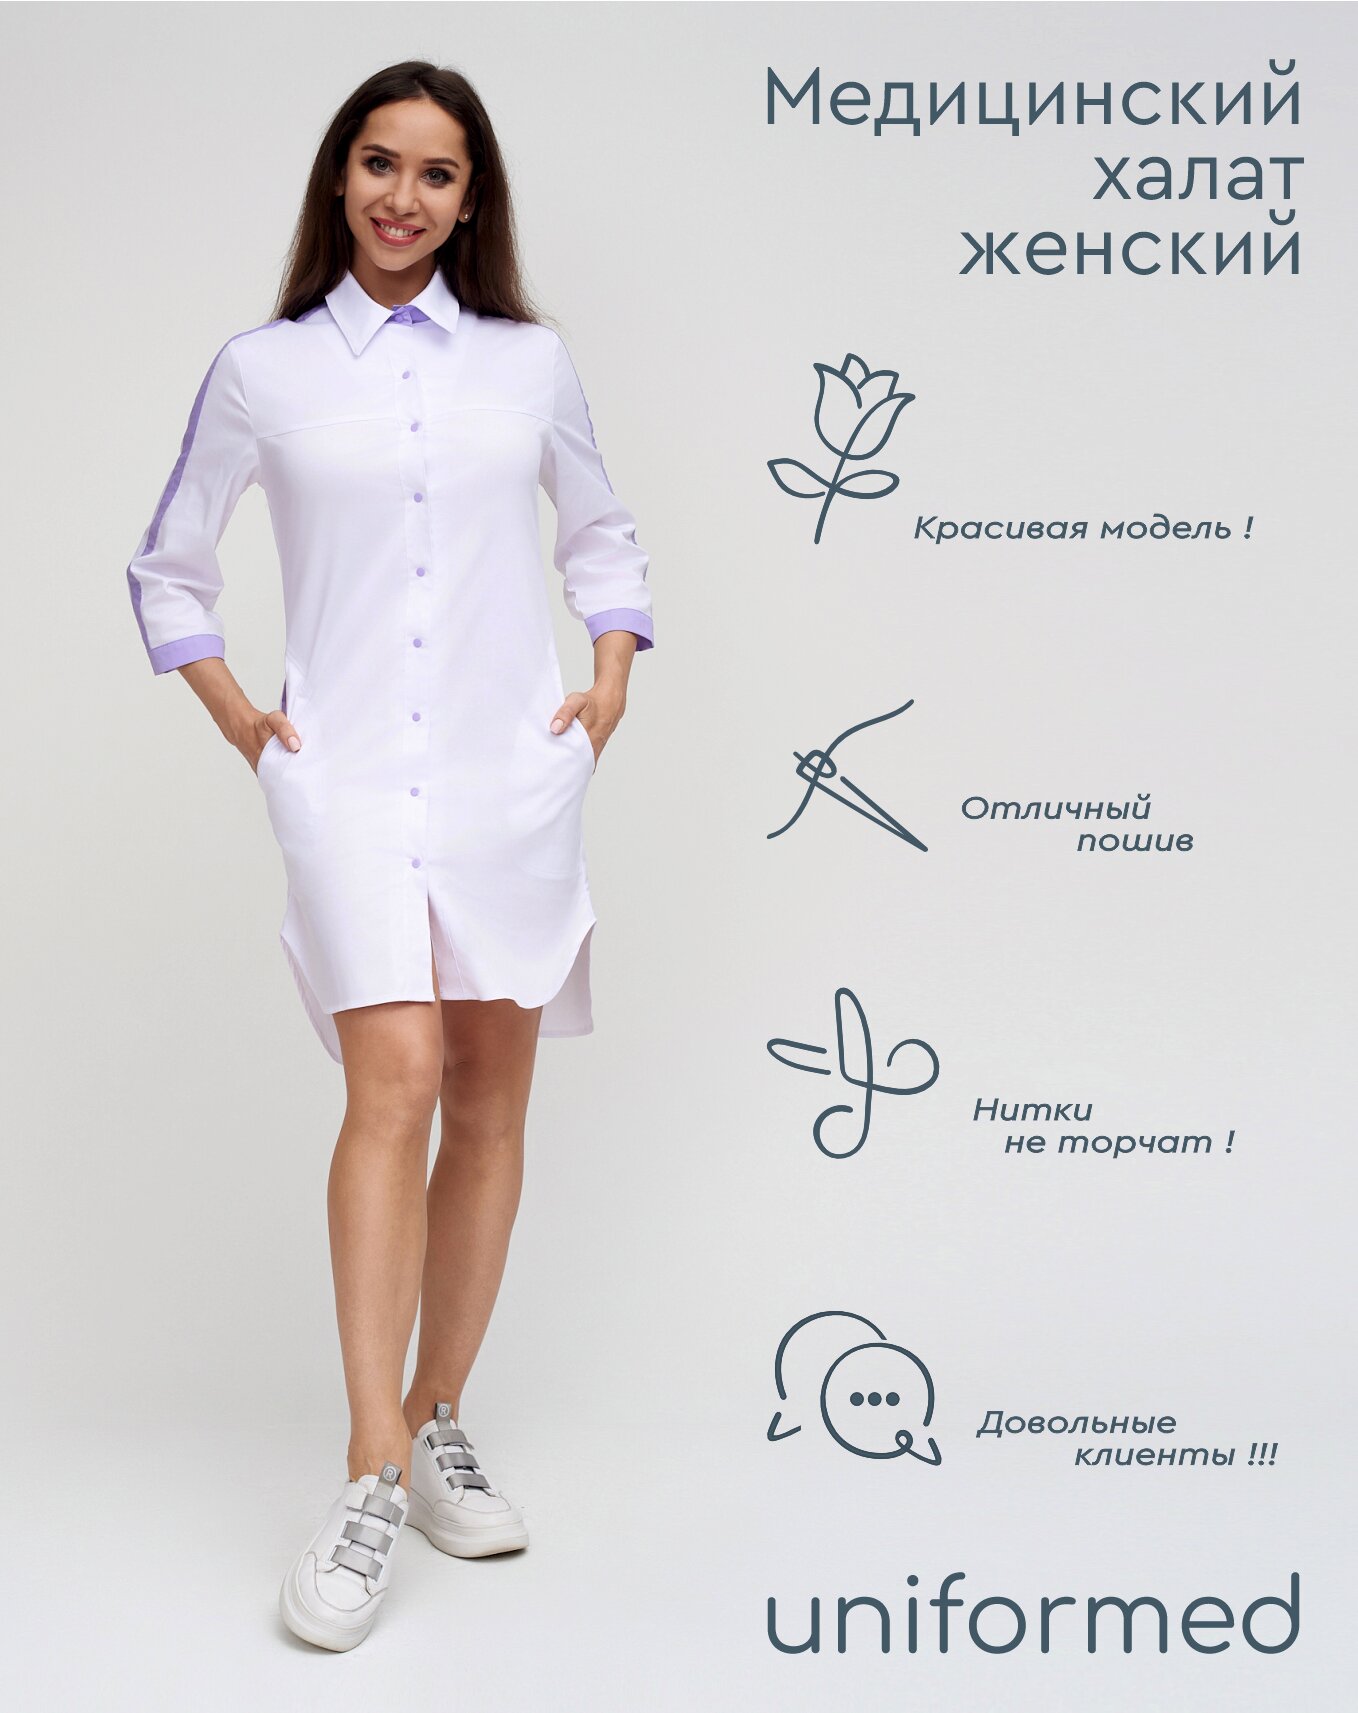 Медицинский женский халат 370.4.2 Uniformed, ткань сатори стрейч, укороченный, рукав 3/4, на кнопках, цвет белый, отделка сиреневая, рост 170-176, размер 56